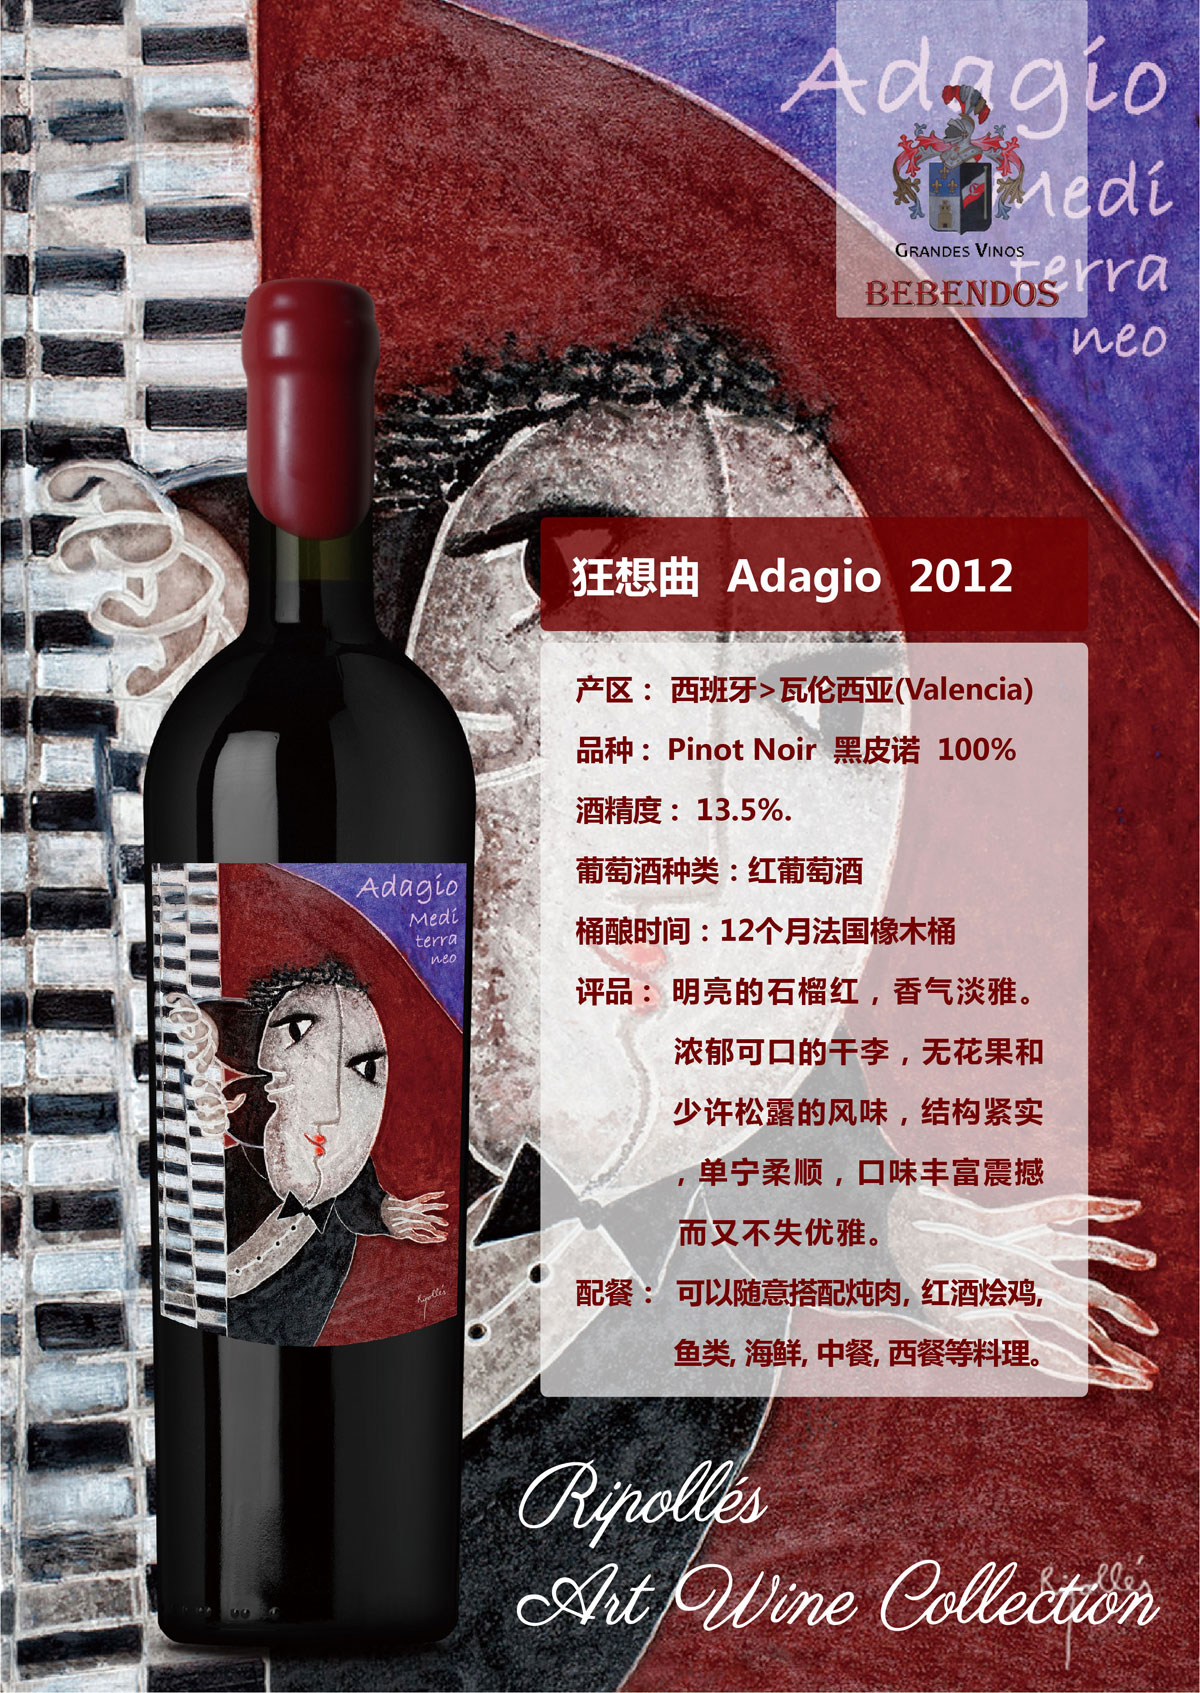 西班牙艺术酒庄画外之音系列黑皮诺狂想曲D.O.P干红葡萄酒红酒